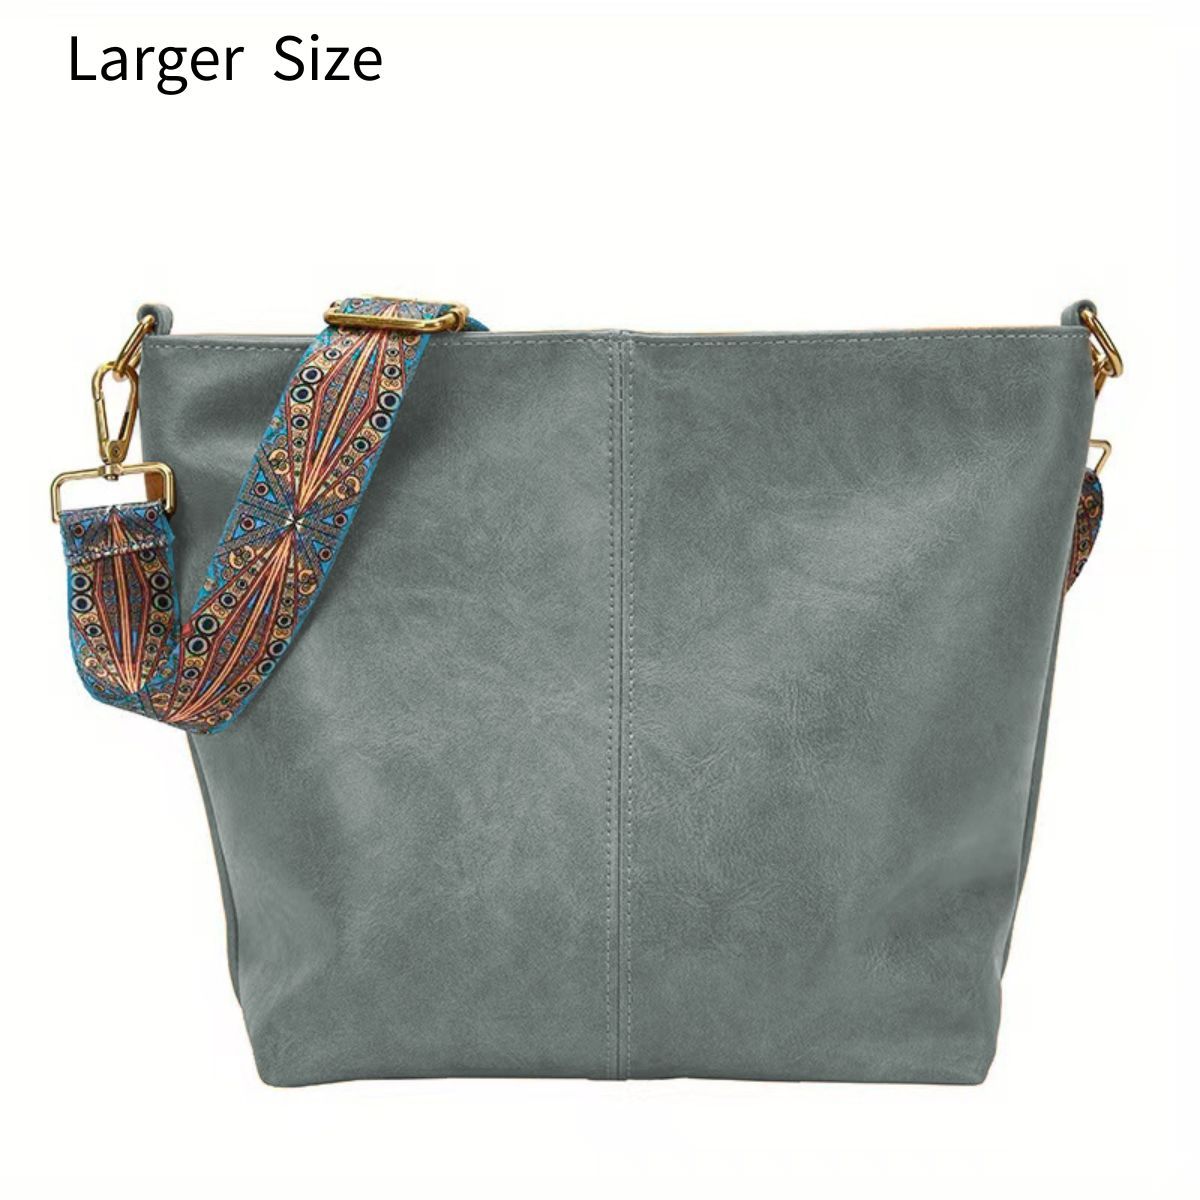 Green Canvas Shoulder Bag Detachable Crossbody Purse Large Hobo Bag Multi  Pockets Tote Shopping Messenger Bag Travel Bag Best Gift for Her